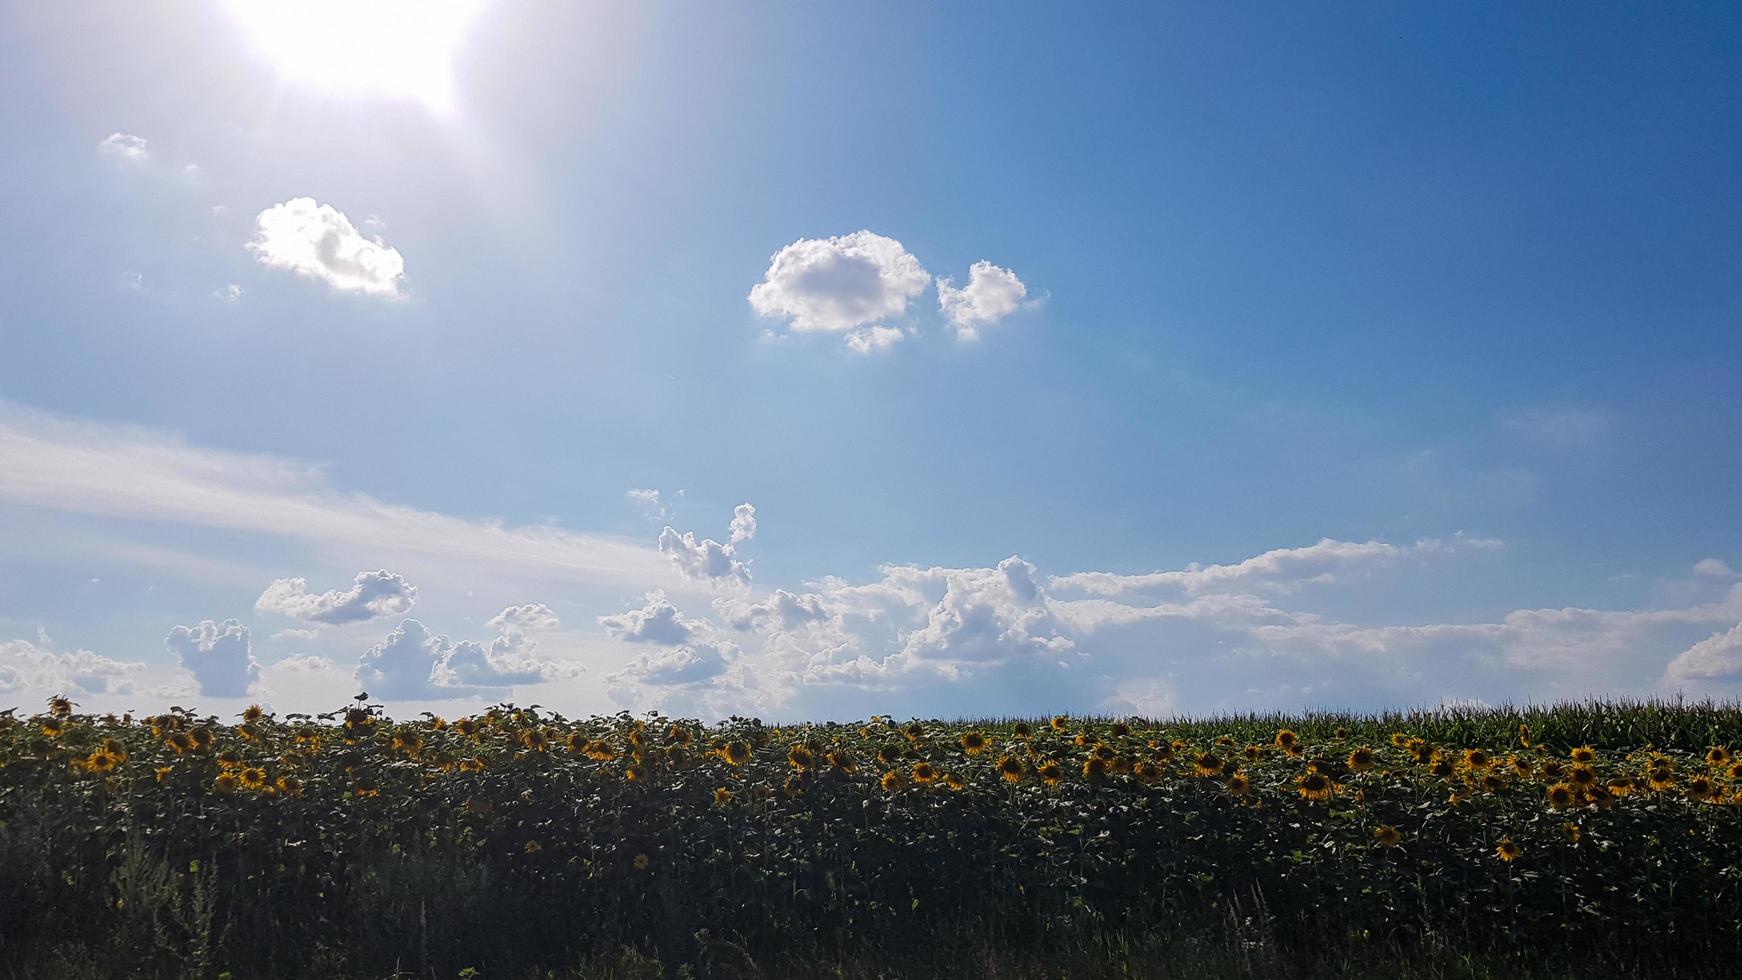 hermoso paisaje, campo de hermosos y brillantes girasoles de oro amarillo, cielo azul y nubes blancas en el fondo en un día soleado. foto del concepto de ecología. industria agrícola.